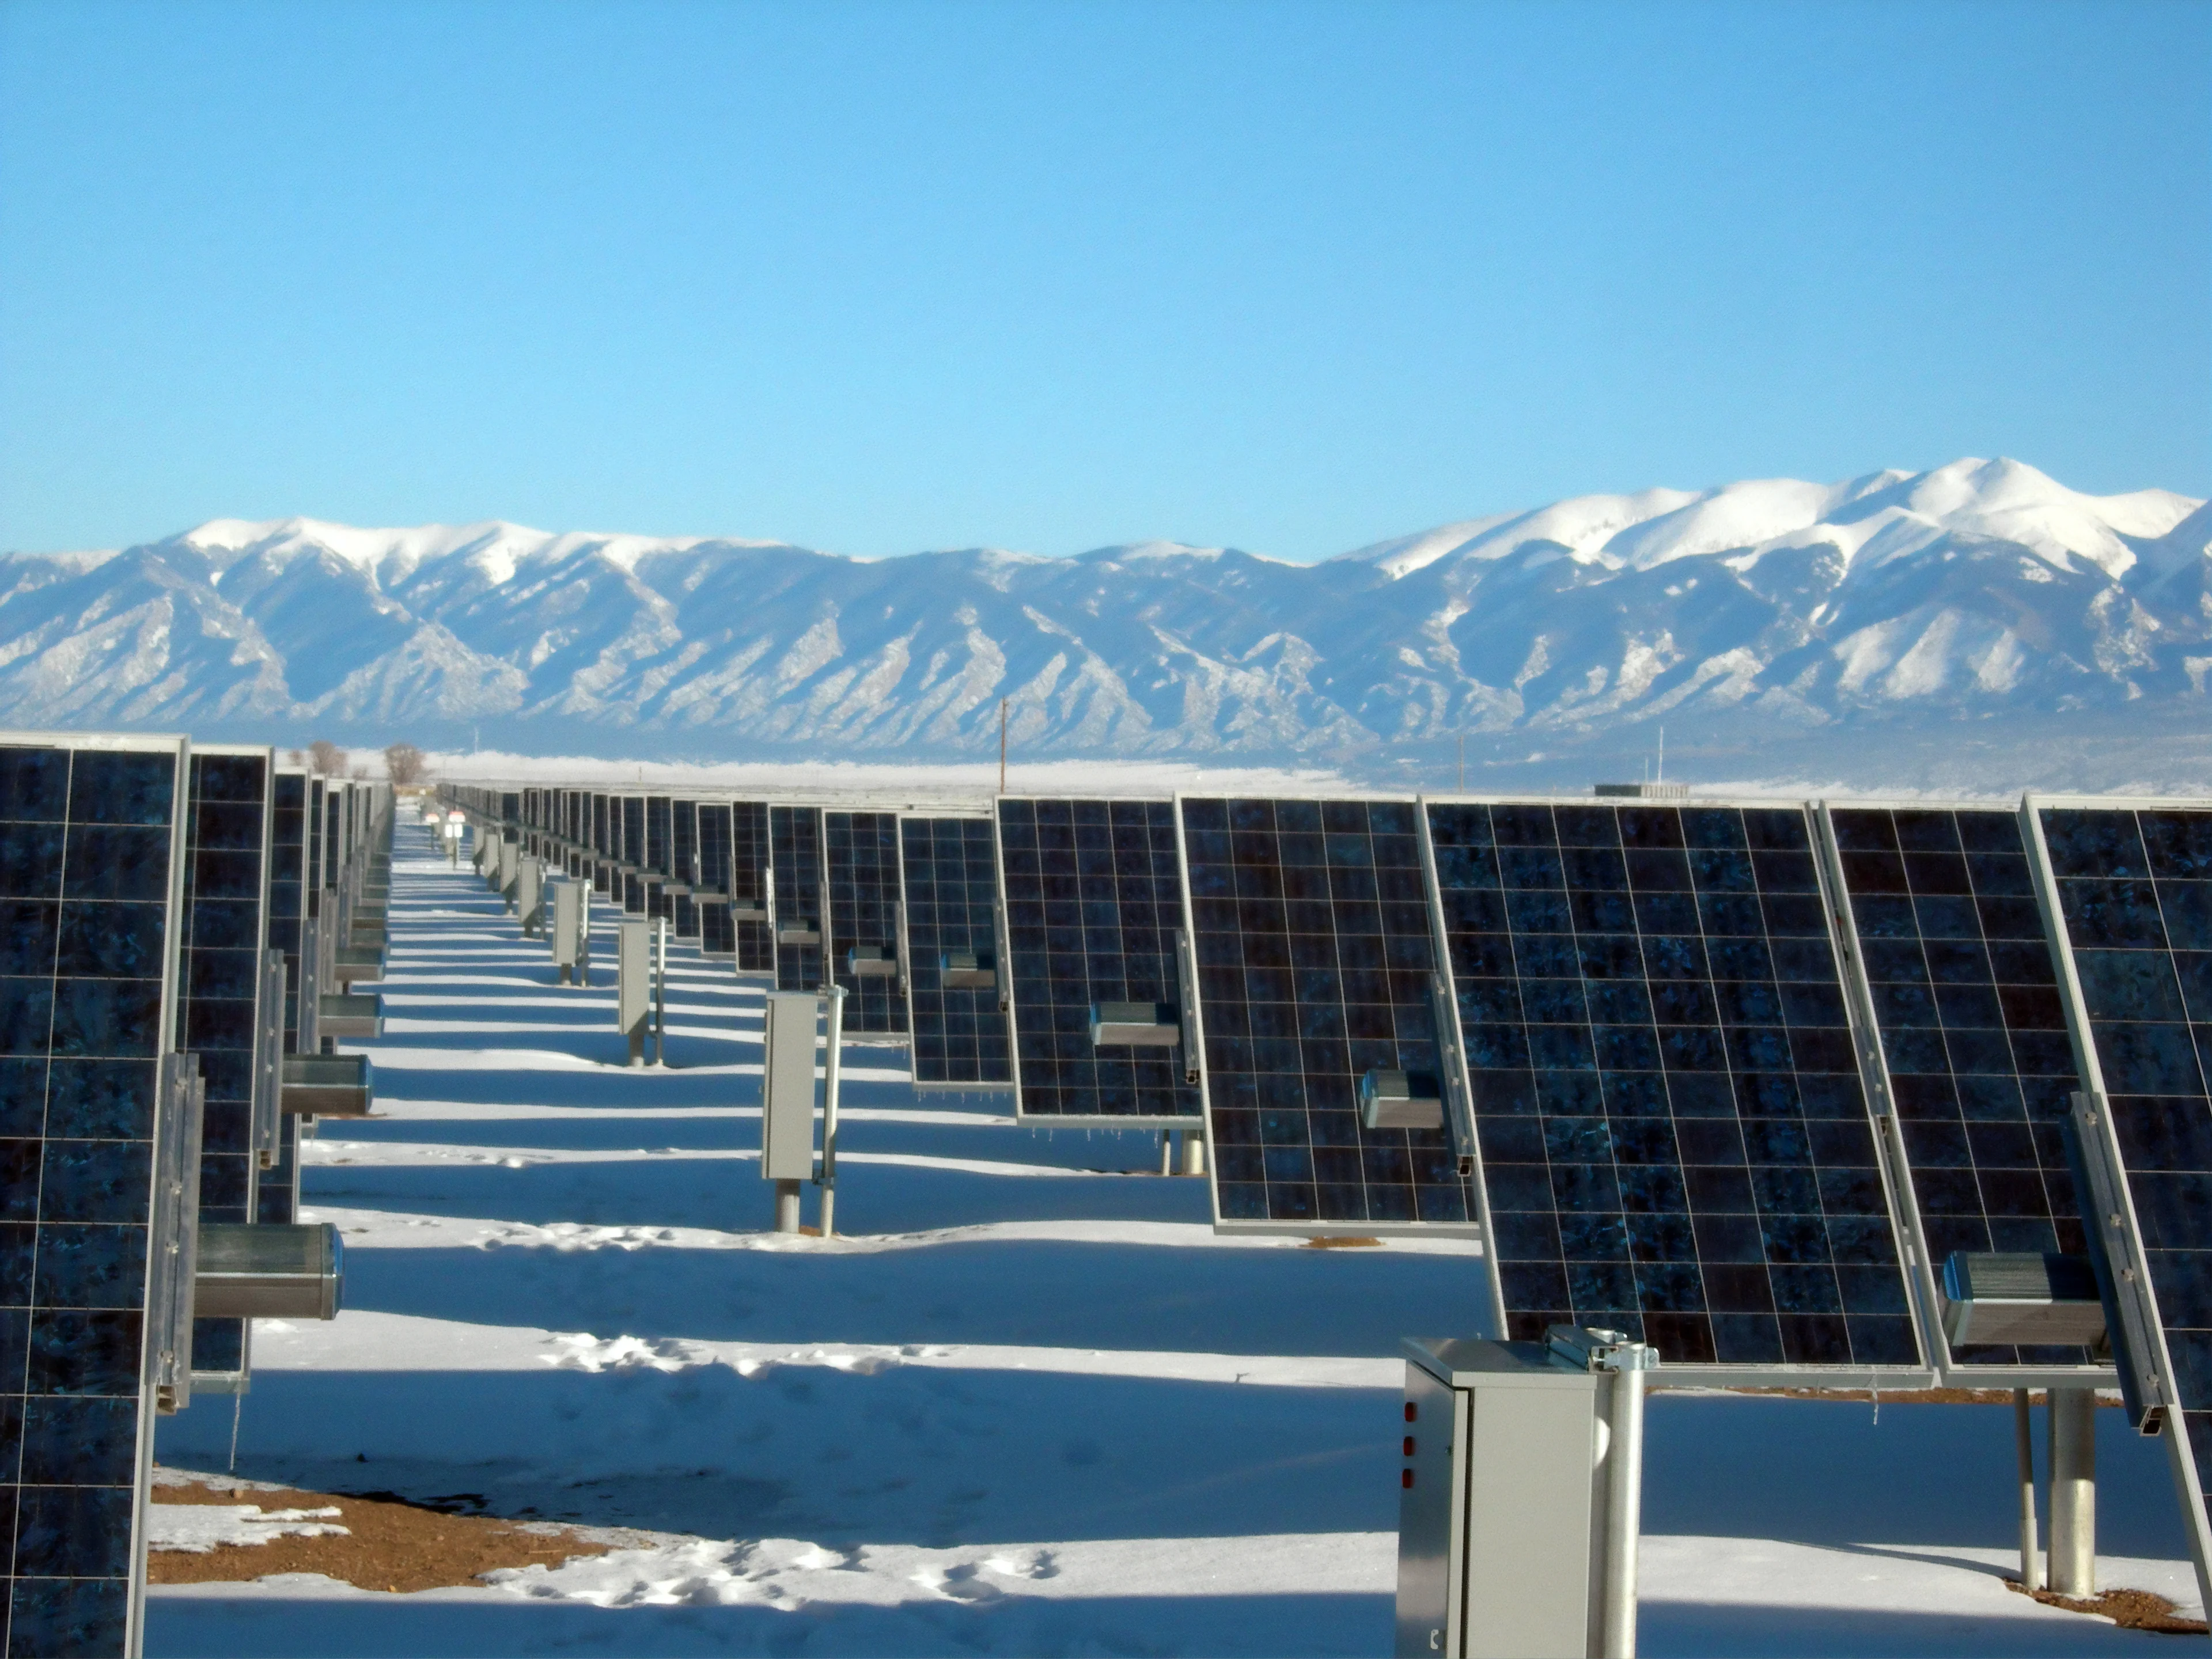 Solar panels in Colorado Credit: Science by HD via Unsplash